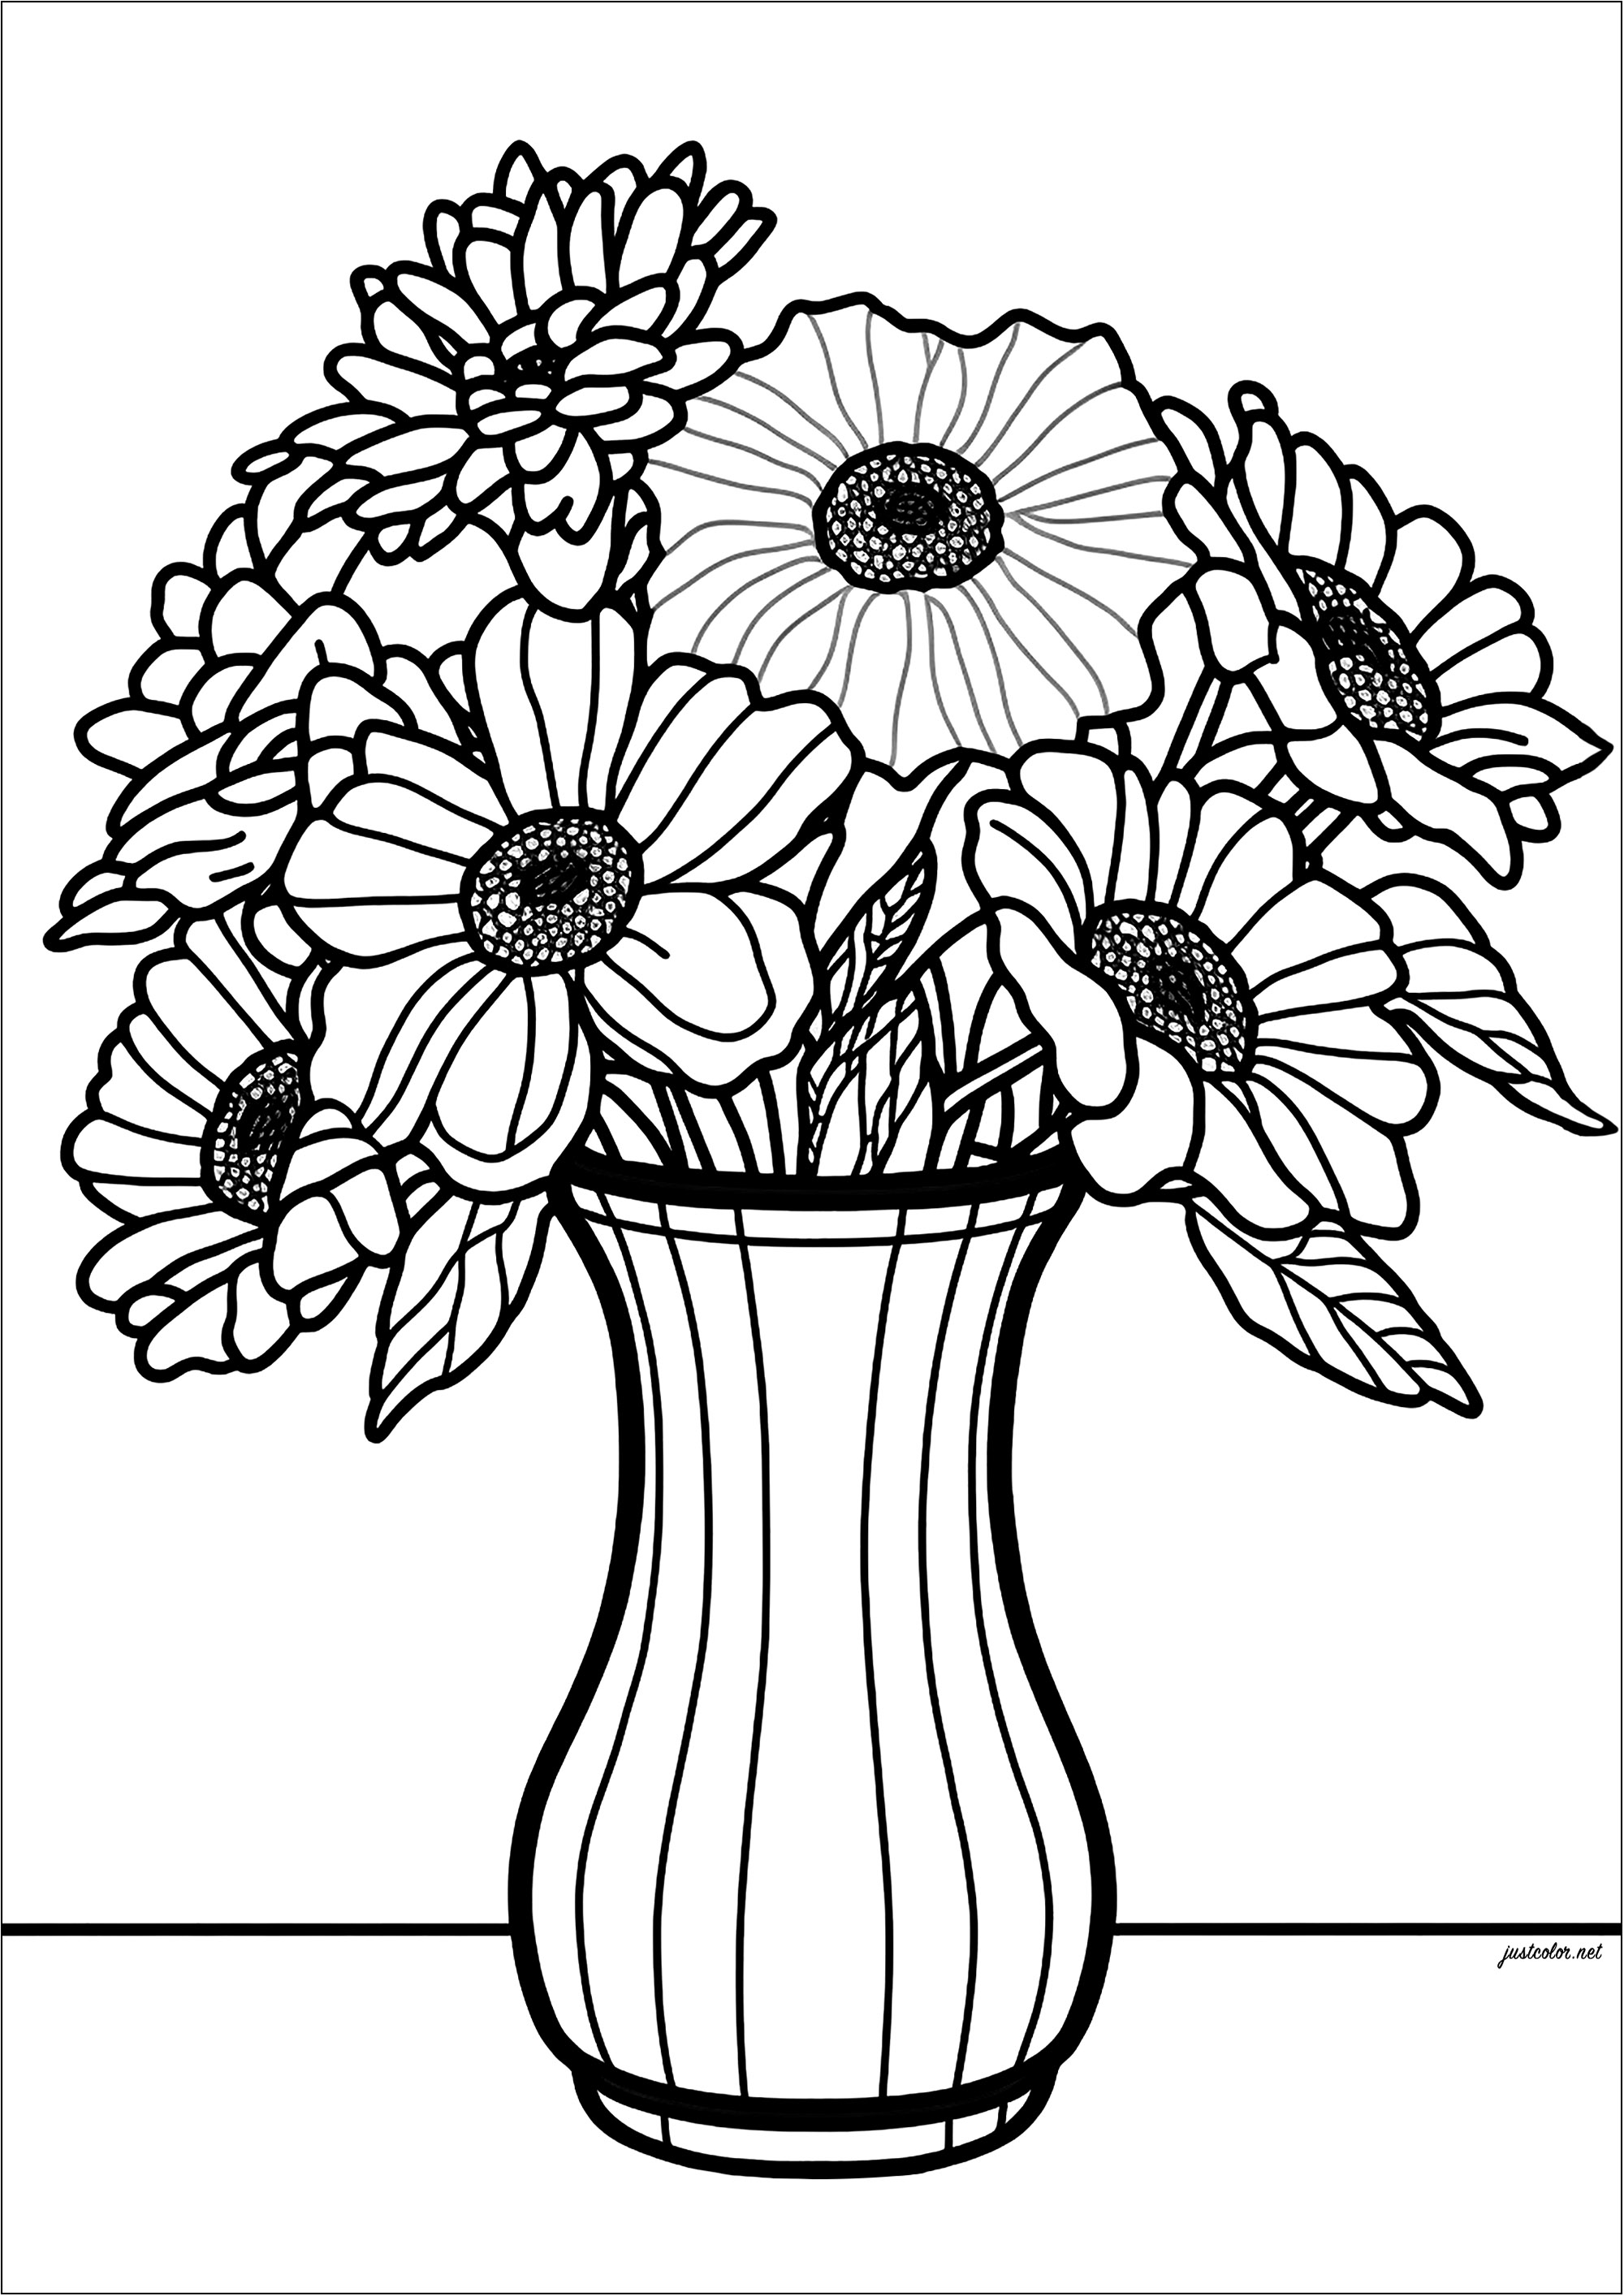 Dickblättrige Blumen in einer schönen Vase. Mit deinen Farben wird dieses Malbuch ein wahrer Augenschmaus sein. Es ist perfekt für Kinder und Erwachsene, die in eine Welt voller Farben und Schönheit entkommen wollen.